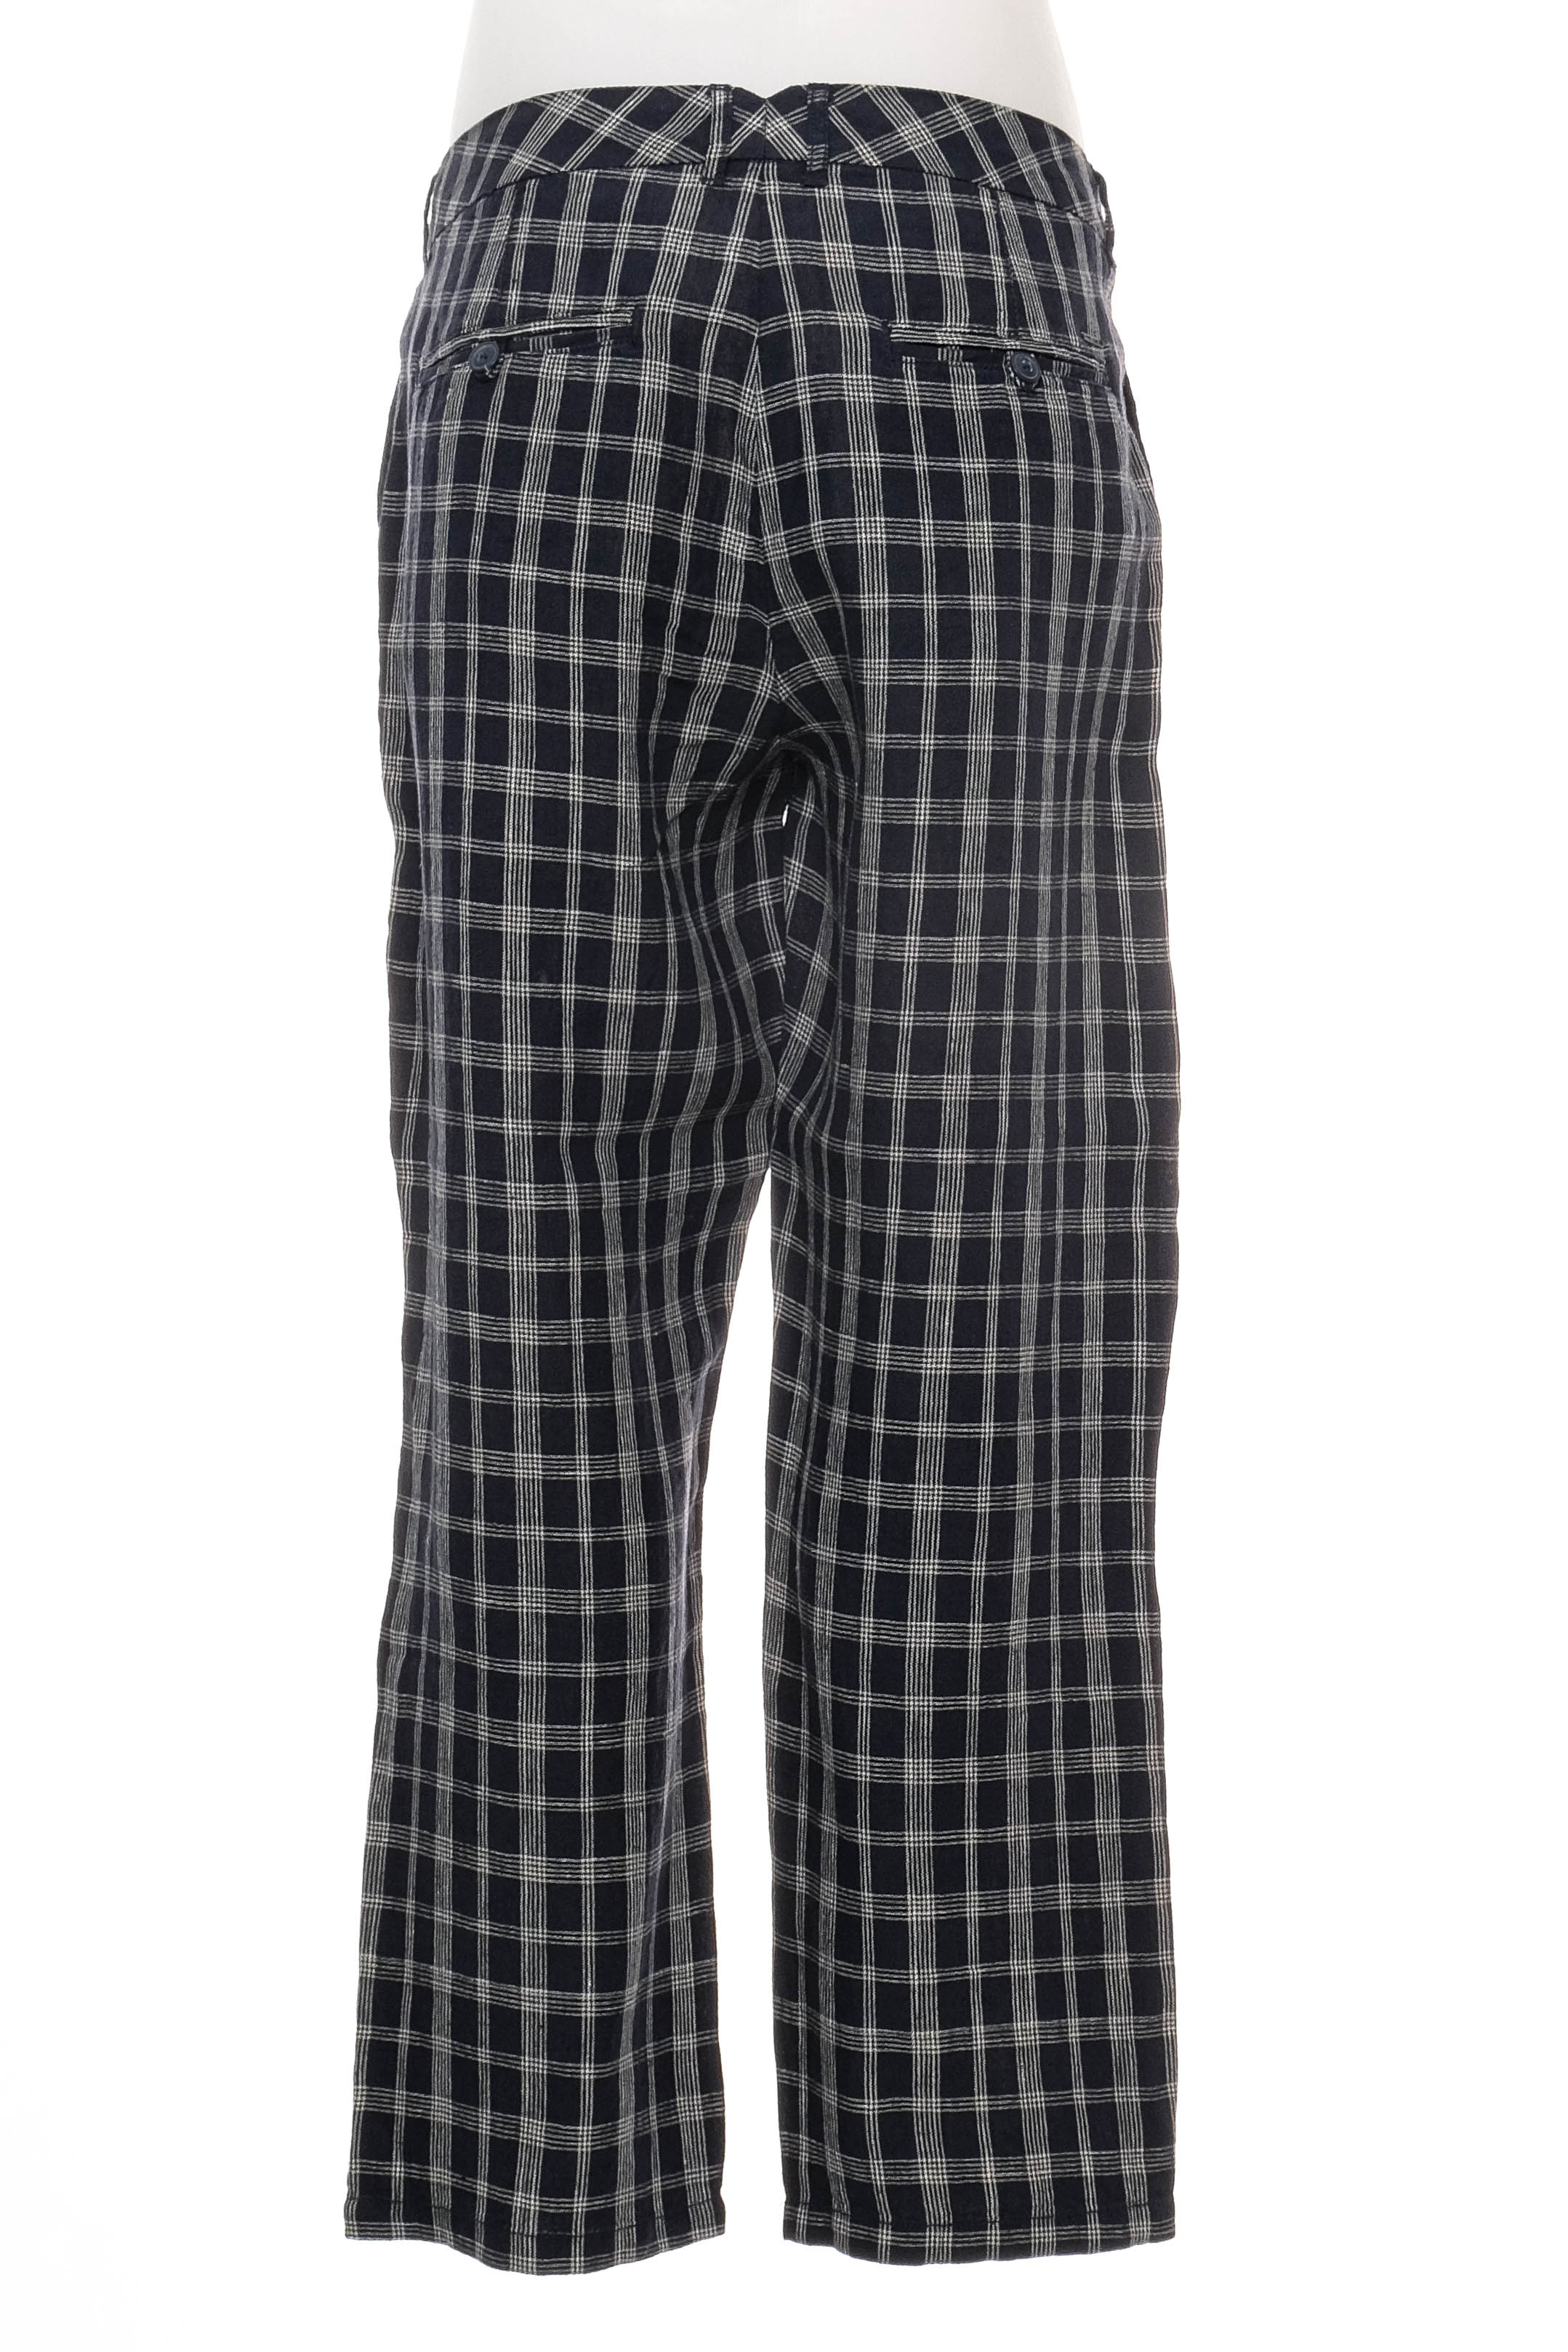 Pantalon pentru bărbați - Pepe Jeans - 1